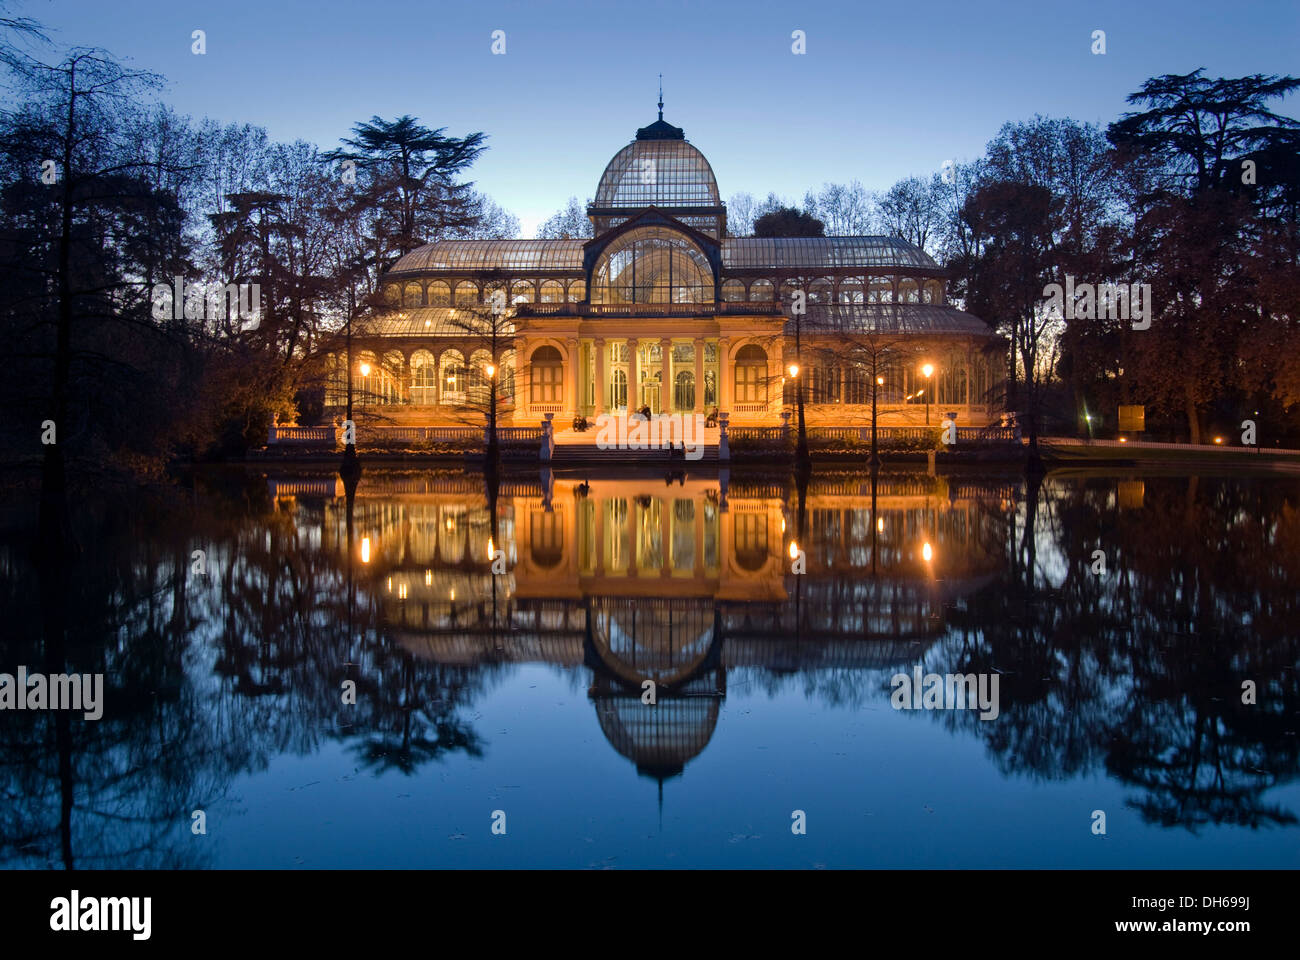 Palacio de Cristal, Crystal Palace, al tramonto, Jardines del Buen Retiro, il Parco del Retiro di Madrid, Spagna, Europa Foto Stock